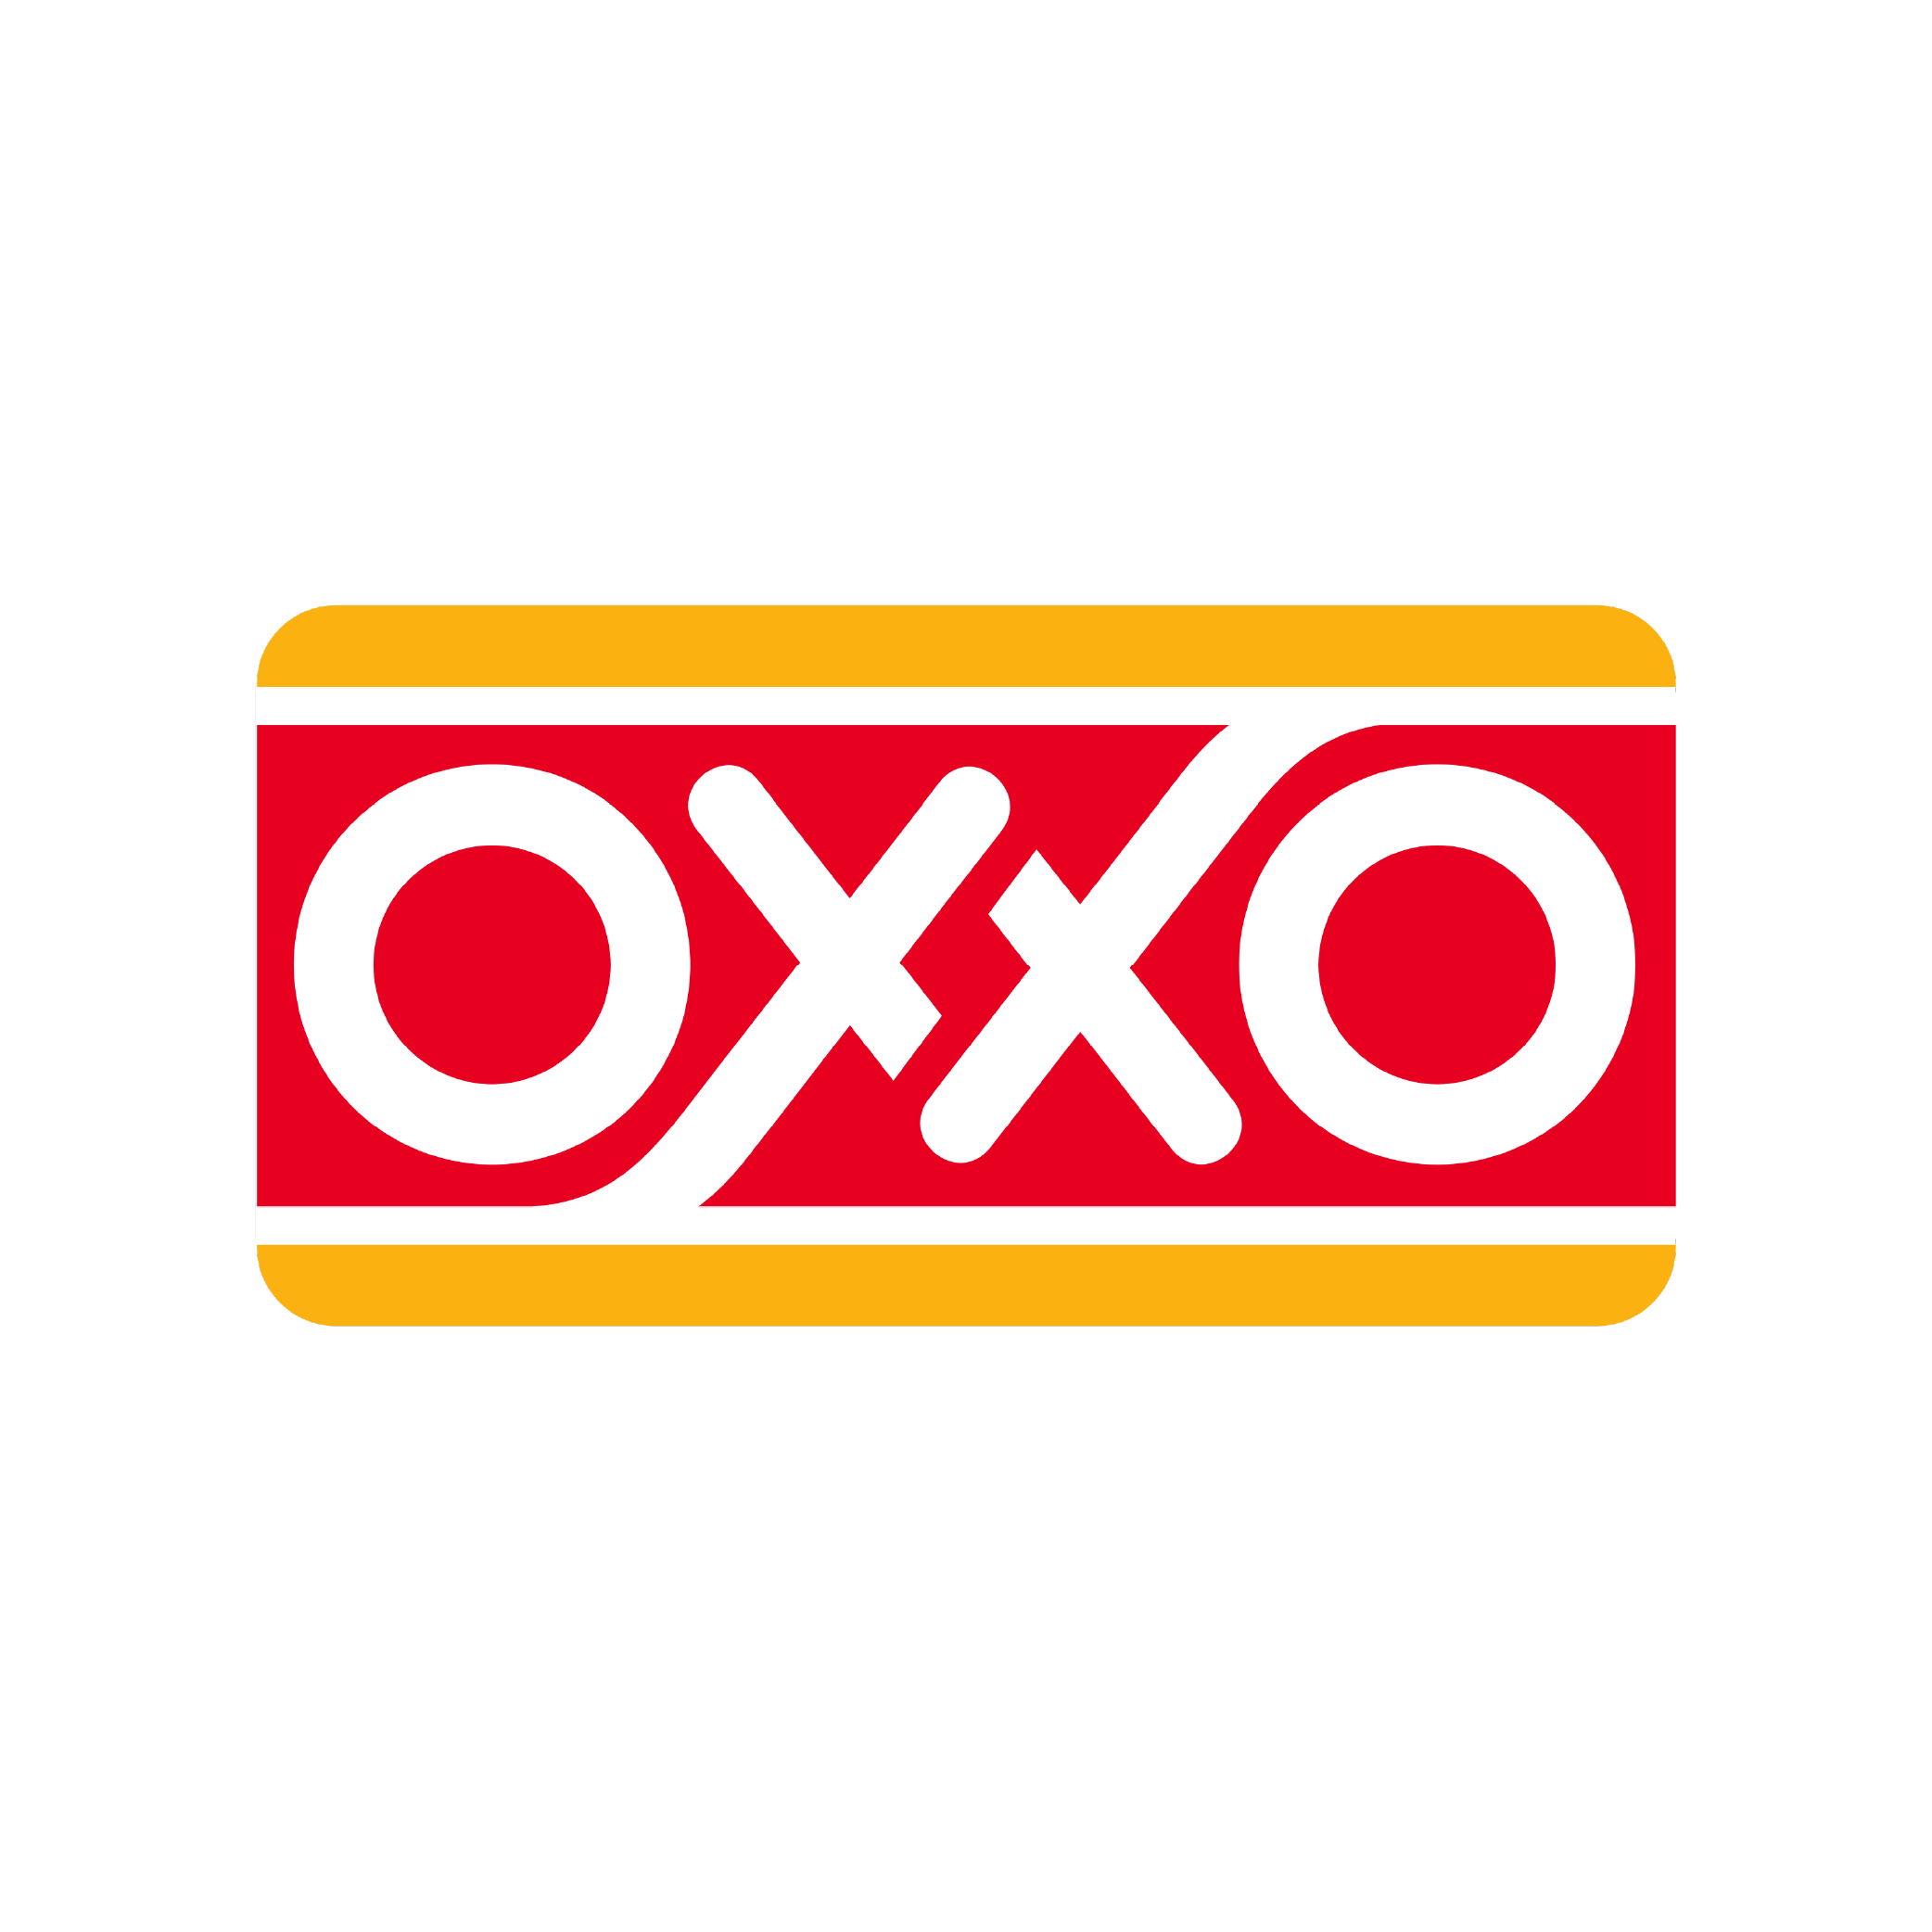 Oxxo_1